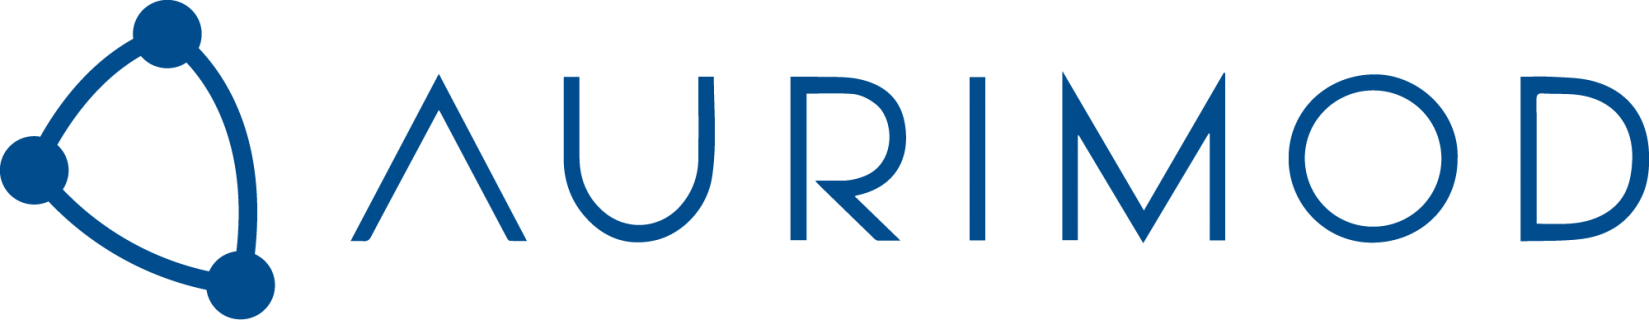 Aurimod-logo.png